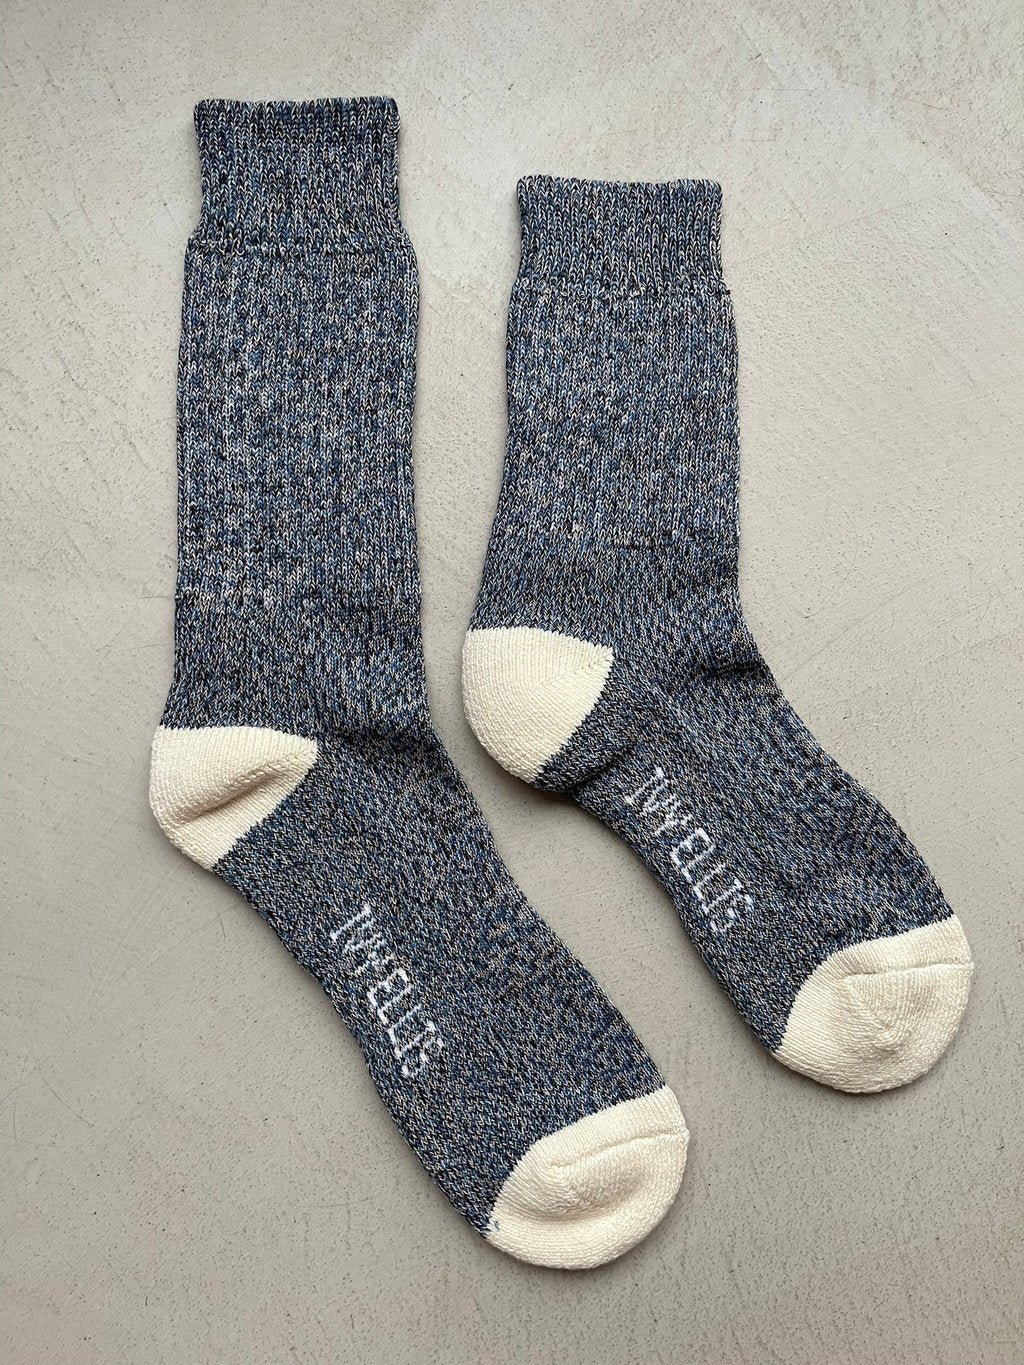 The Voyager | Women's Quarter Length Socks by Ivy Ellis Socks 